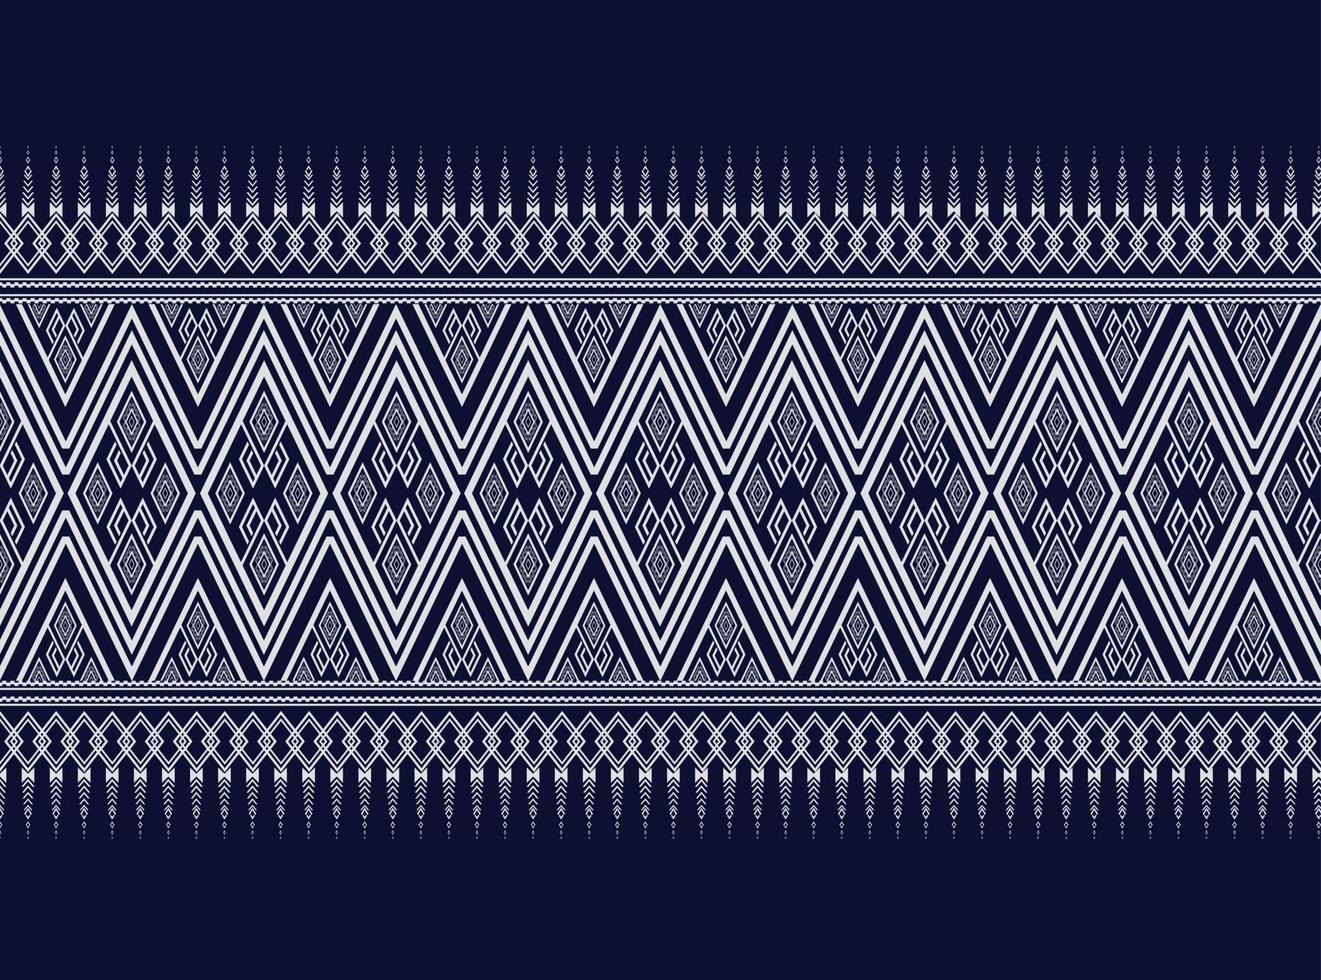 donkerblauw geometrische etnische patroon voor achtergrond of behang en kleding,rok,tapijt,behang,kleding,inwikkeling,batik,stof,kleding, met donkerblauwe driehoek vector illustratie